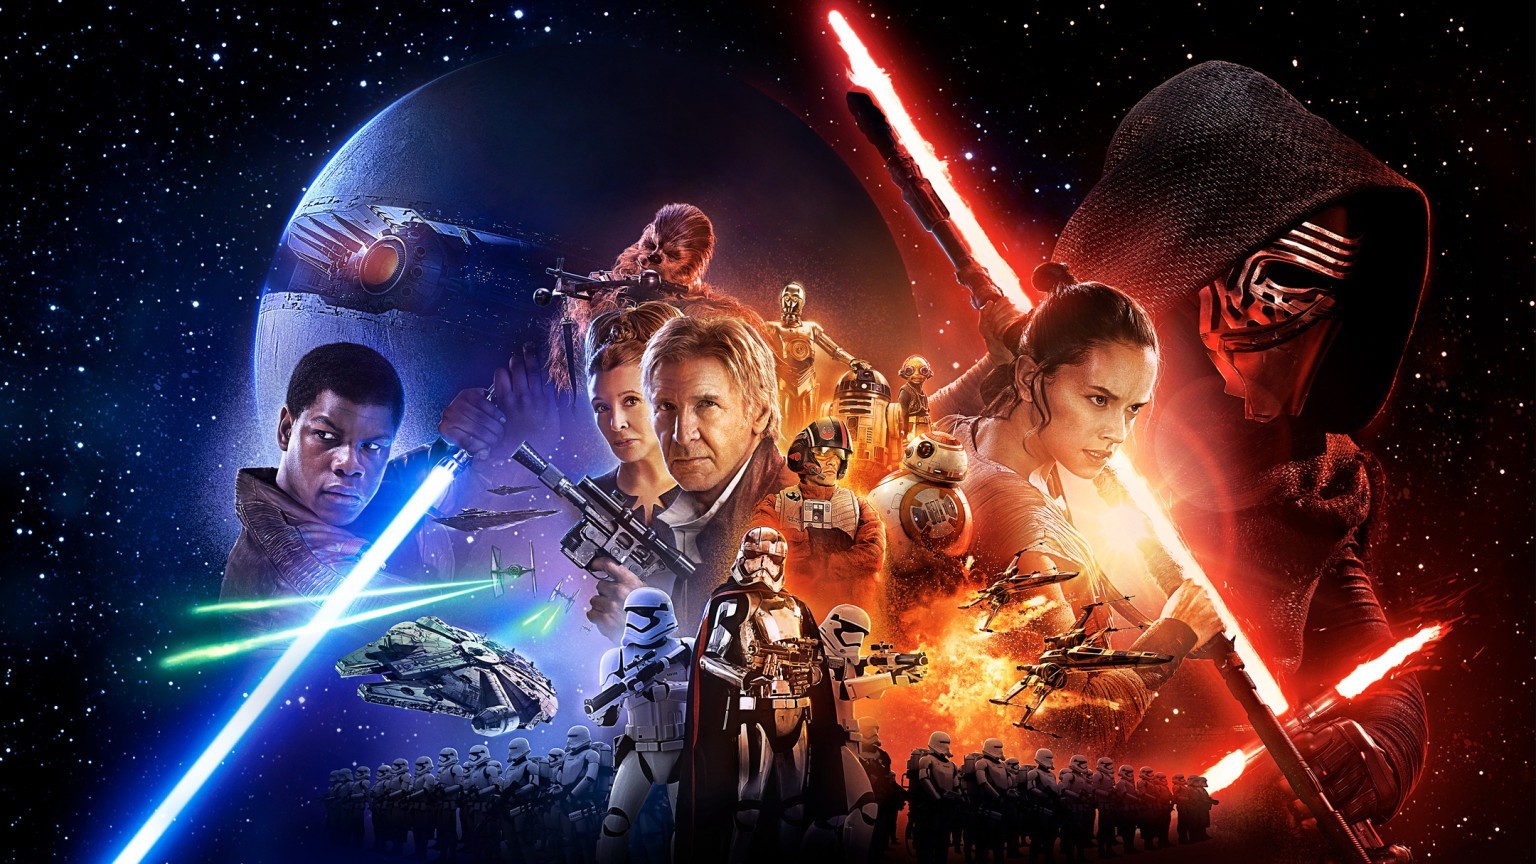 star wars the force awakens full movie vodlocker